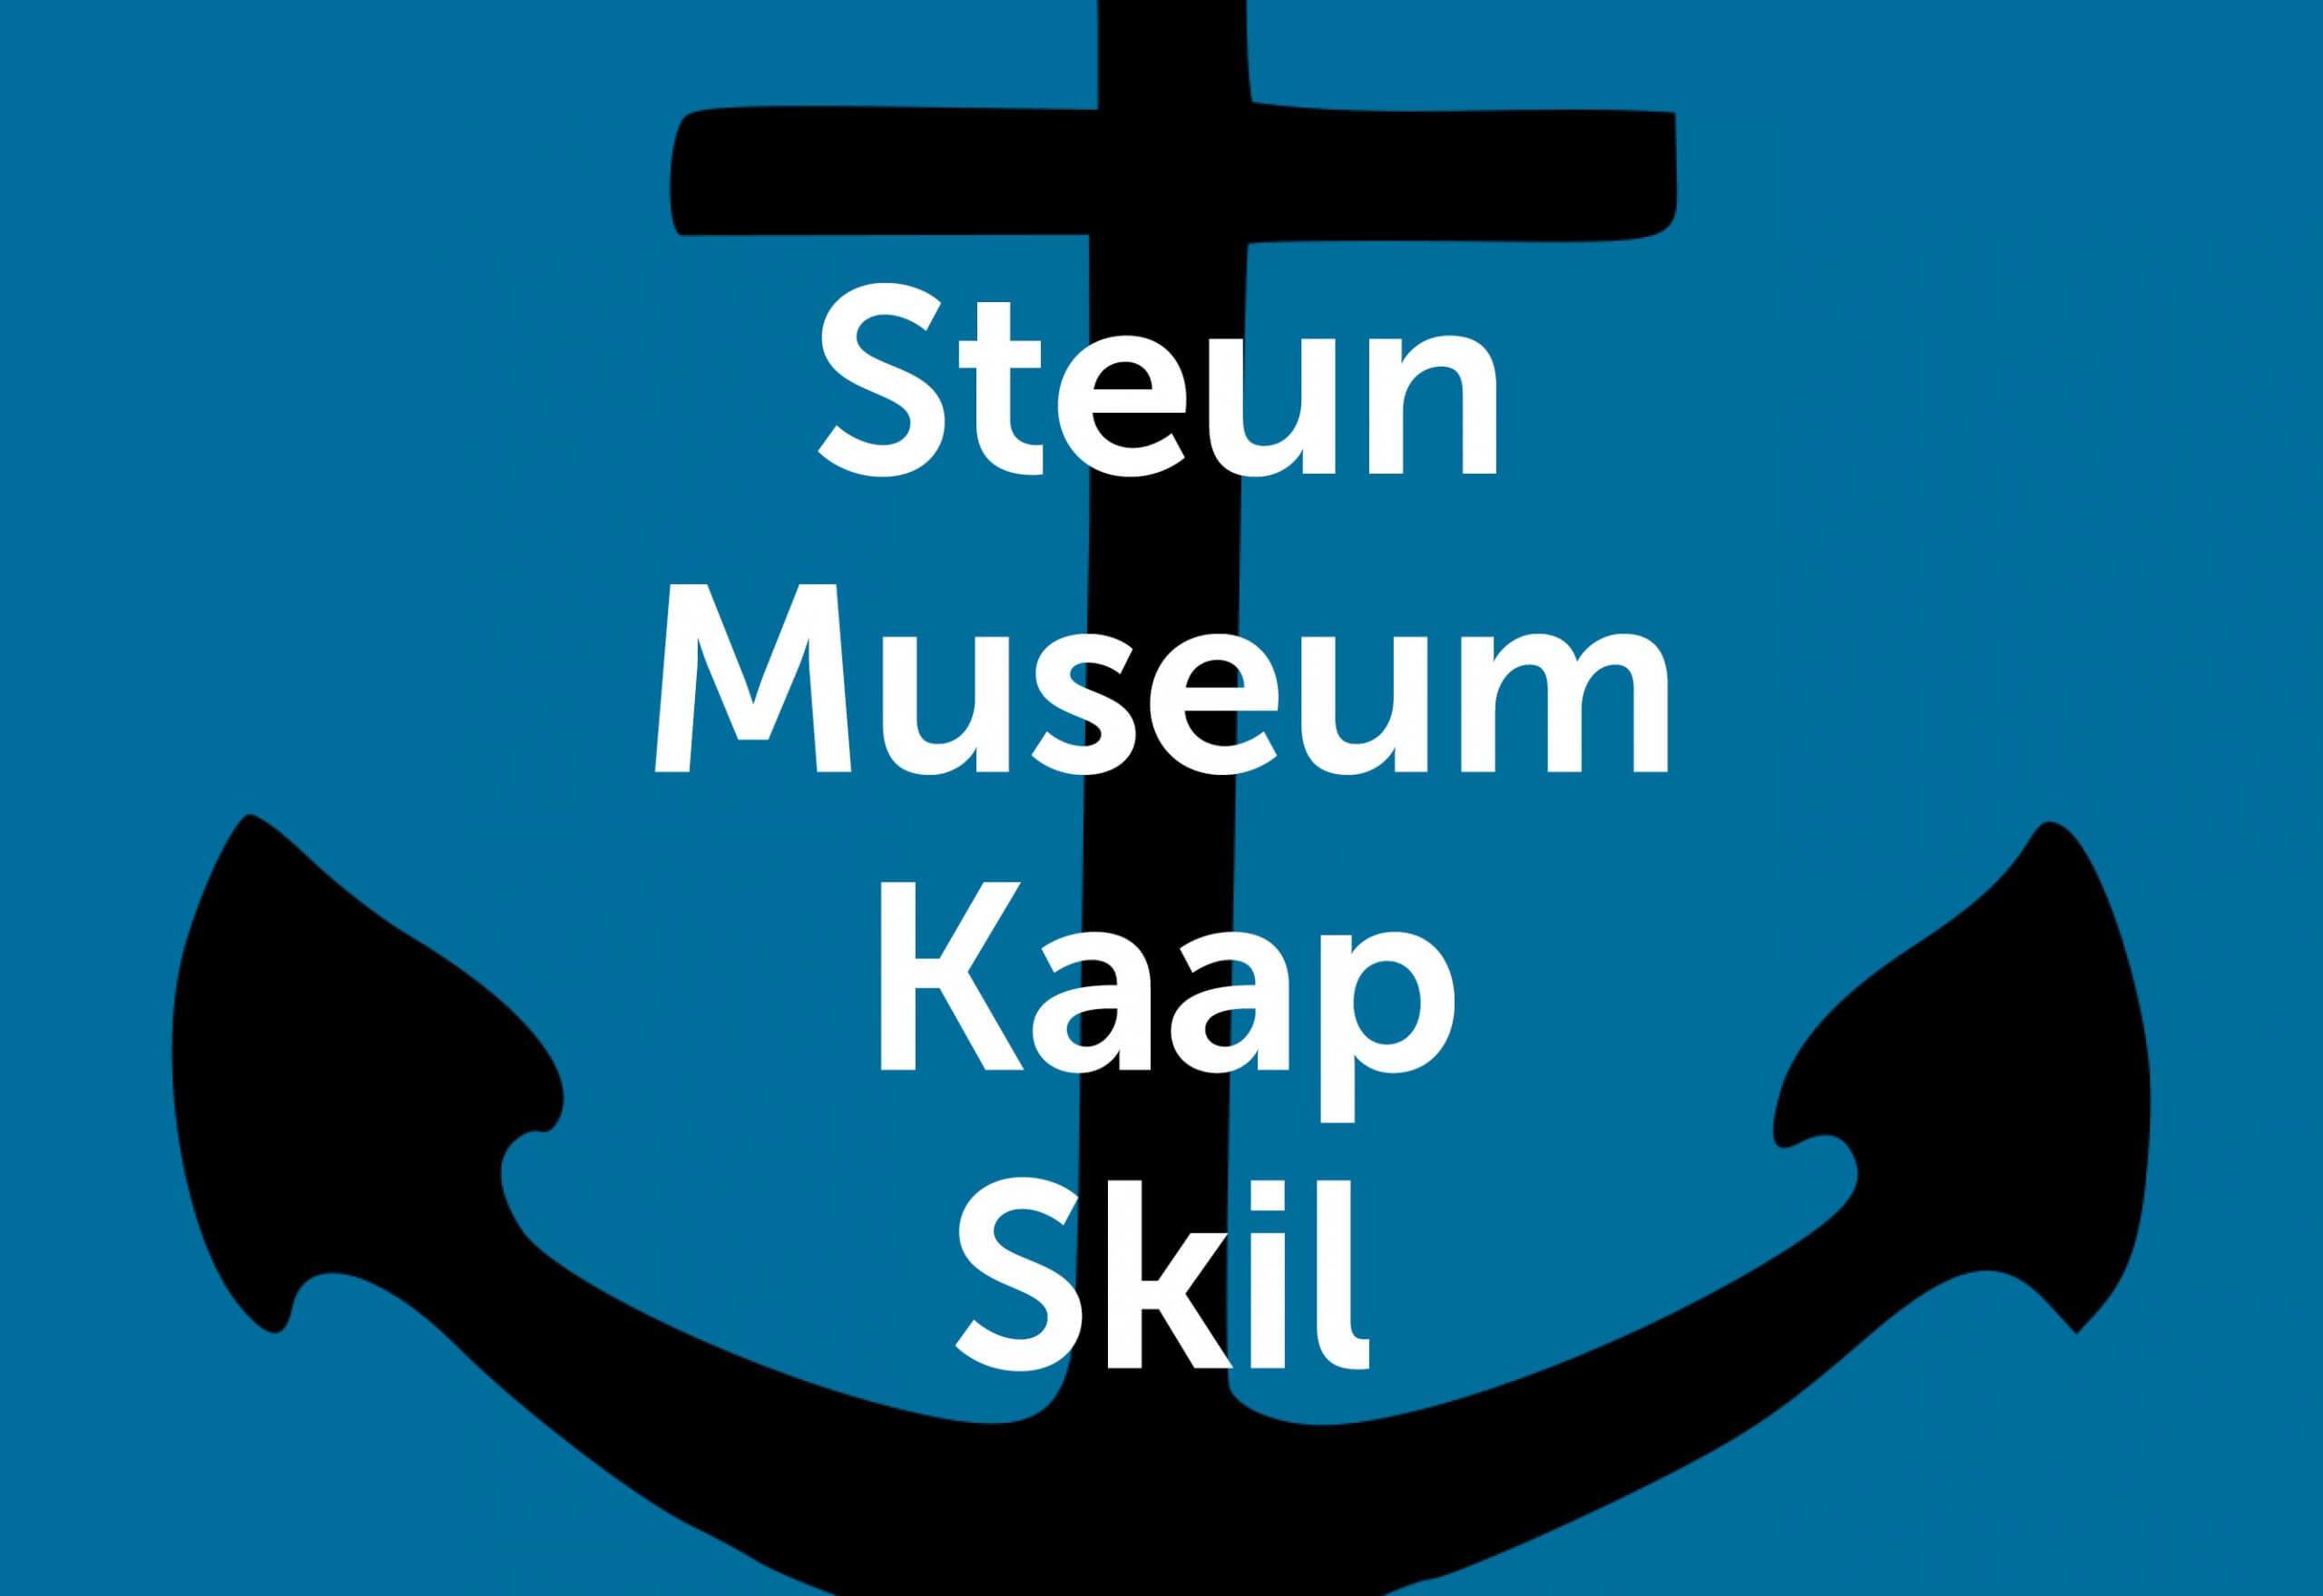 Steun Museum Kaap Skil